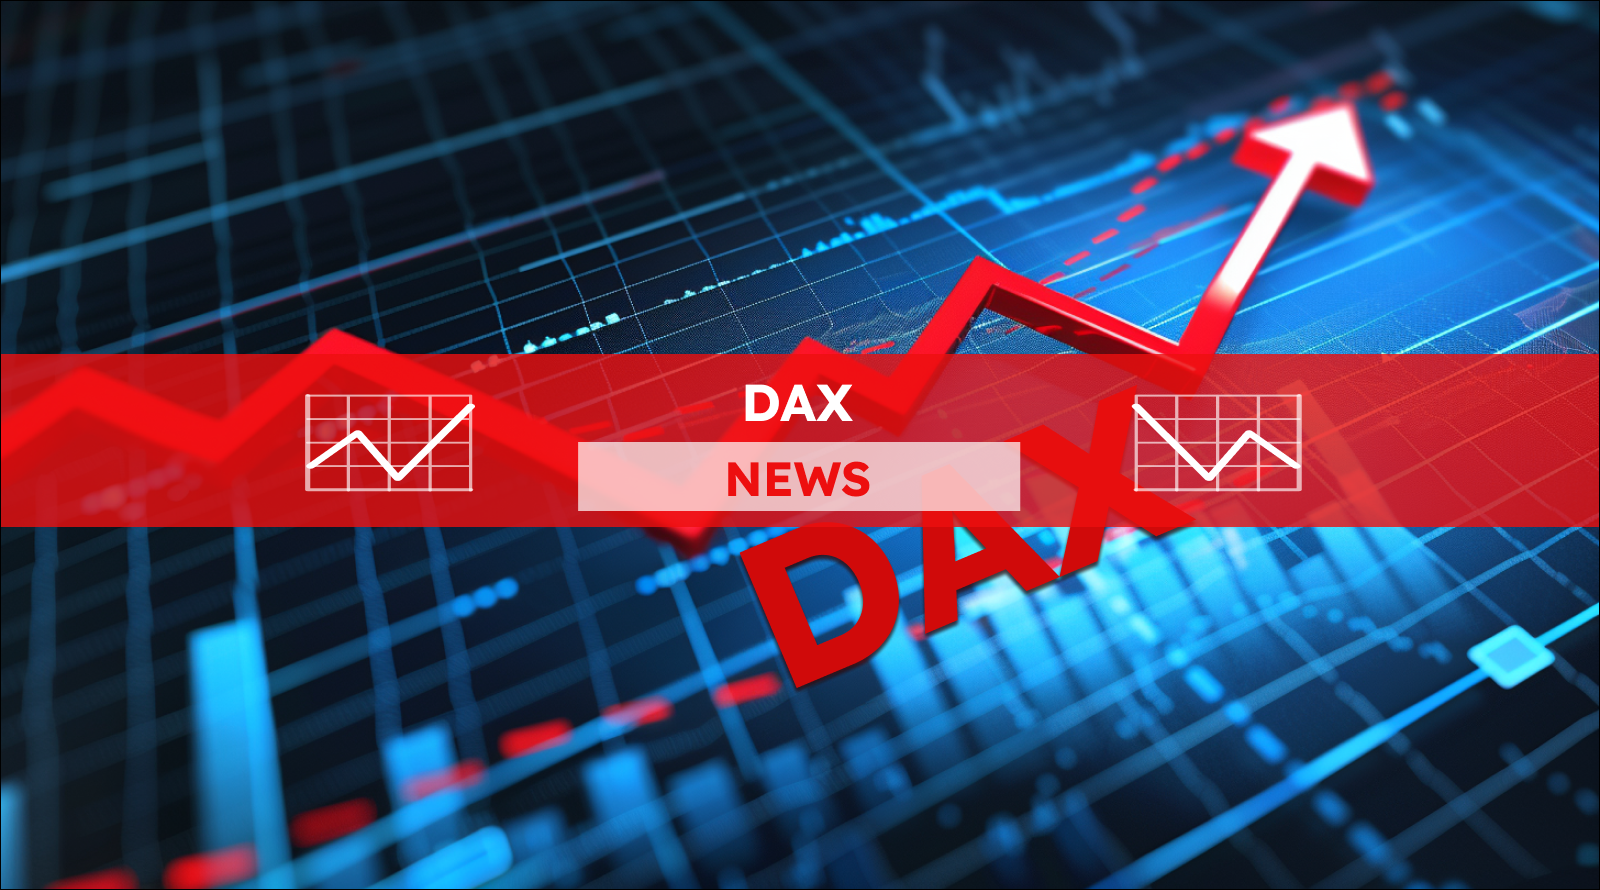 eine steigende rote Pfeildiagrammlinie vor einem blauen Hintergrund mit Gitterlinien zu sehen, die den Schriftzug DAX hervorhebt, mit einem DAX NEWS Banner